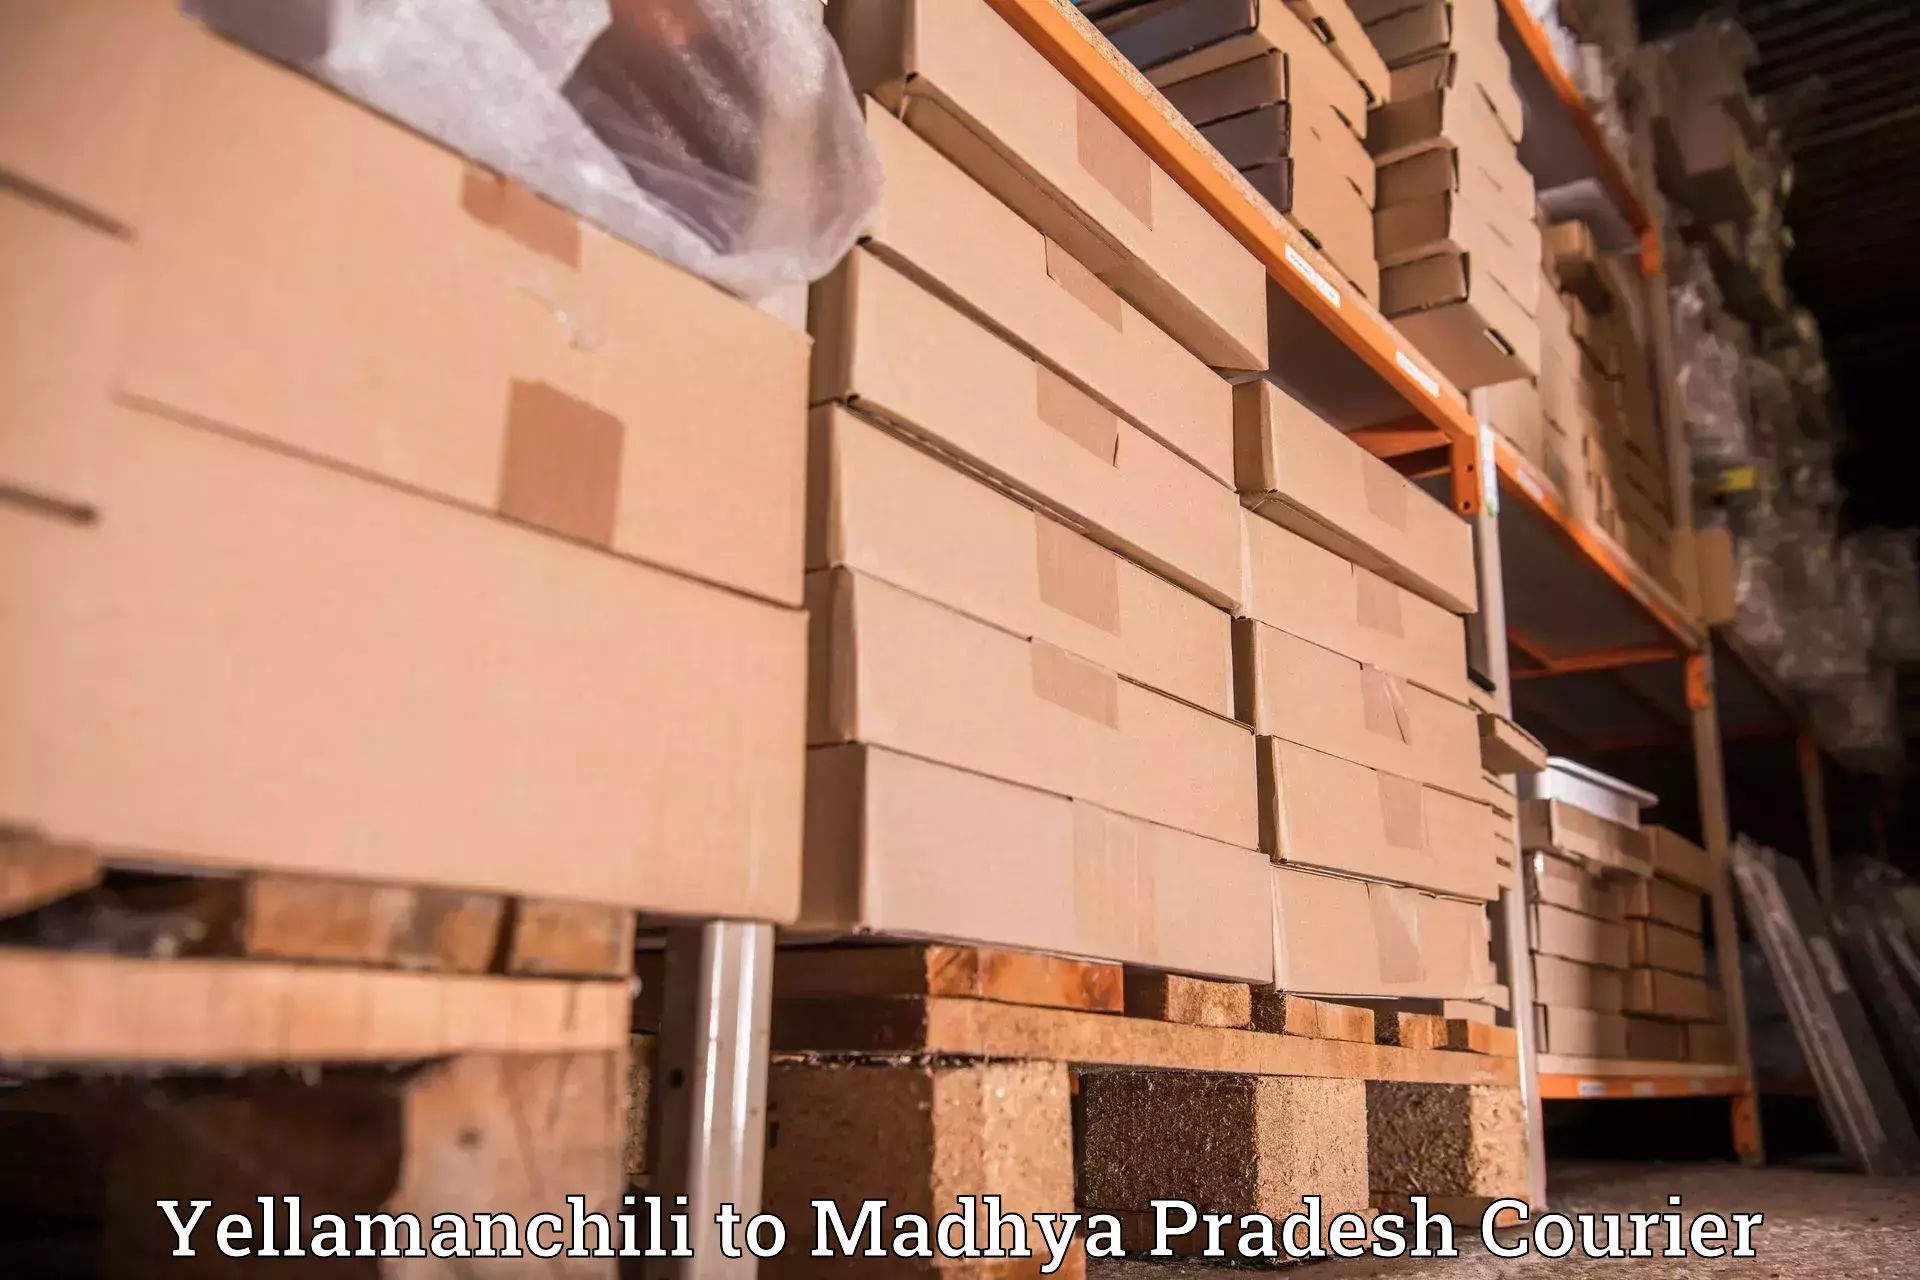 Courier services Yellamanchili to Madhya Pradesh